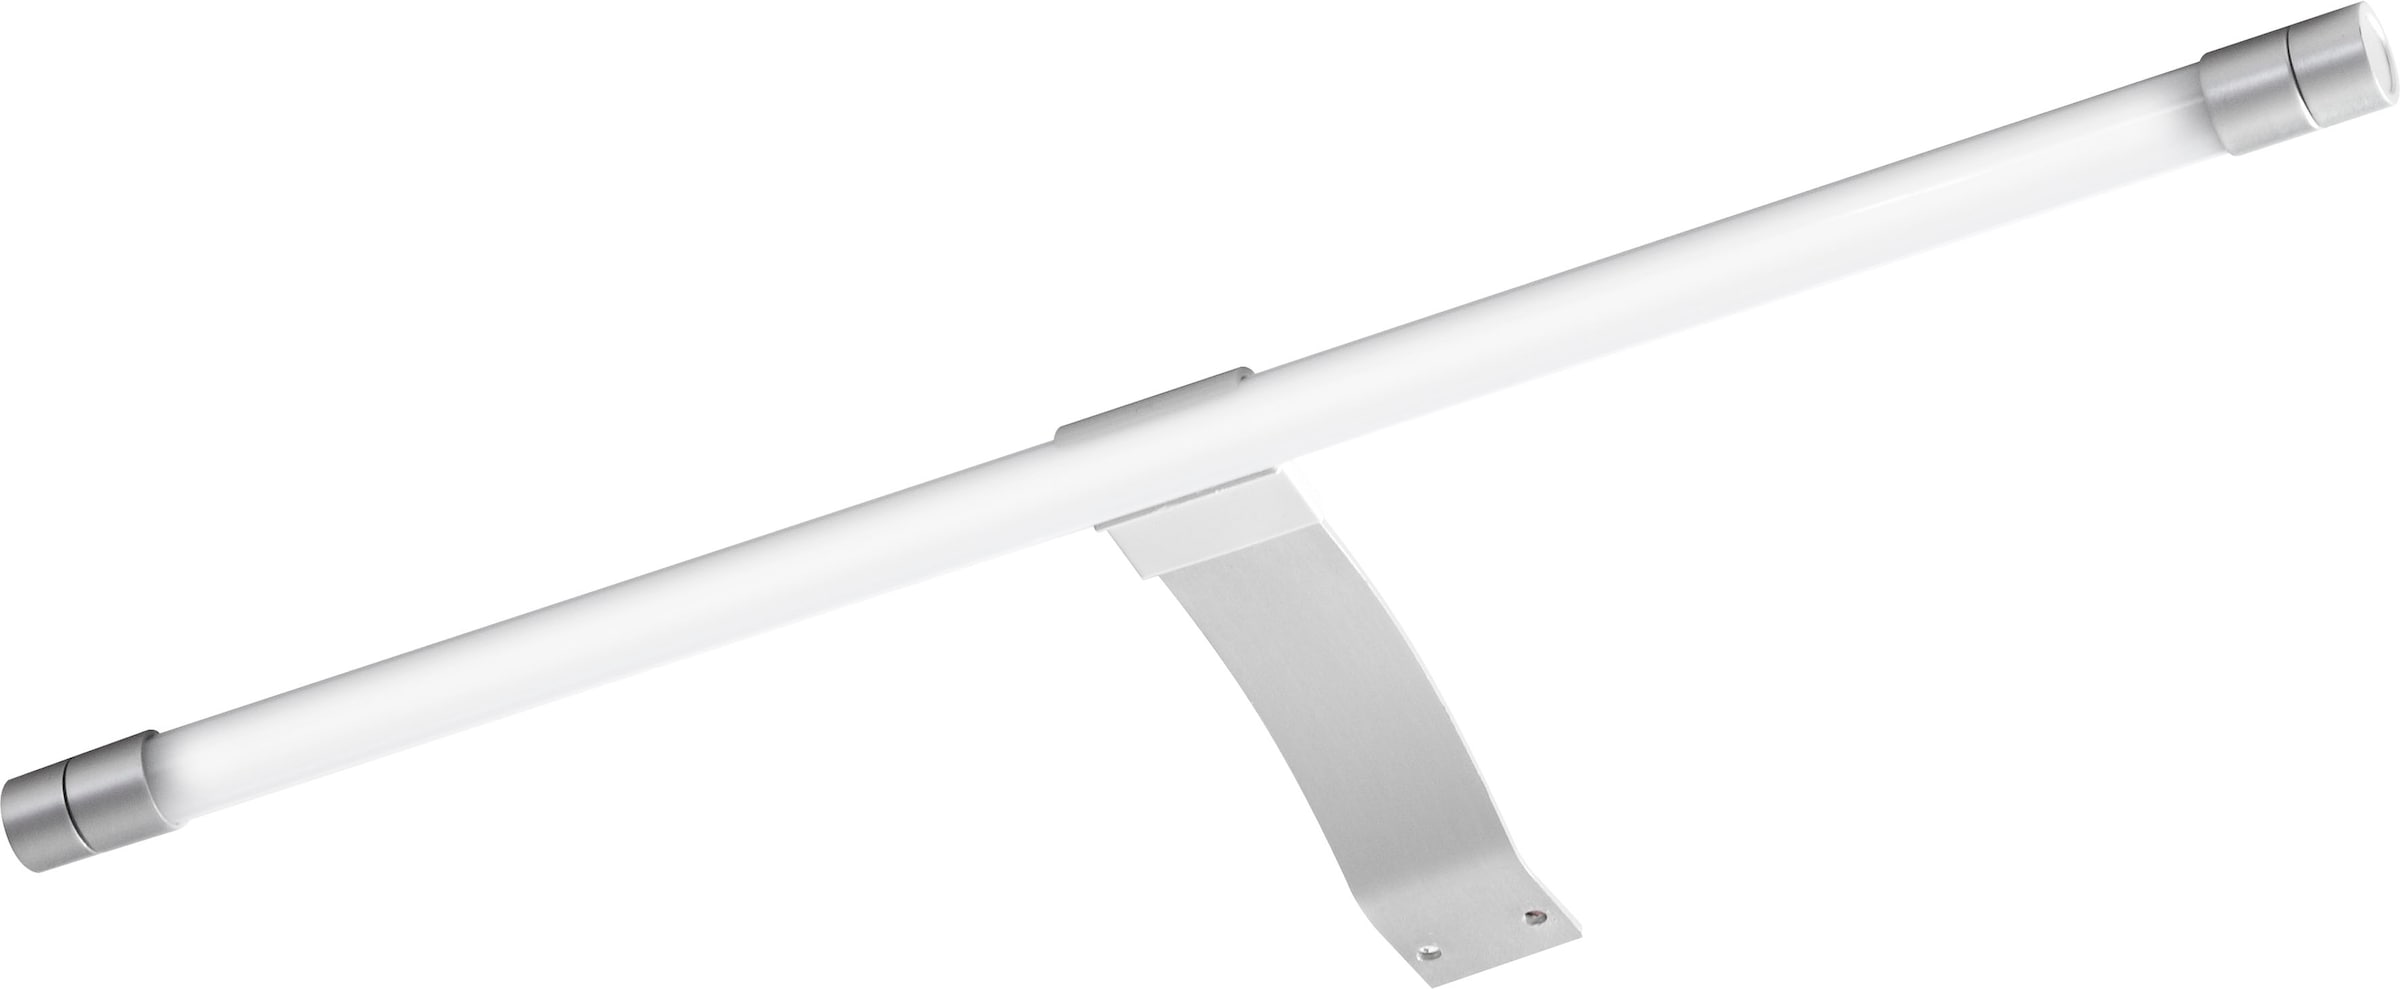 Saphir LED Bad-Spiegelleuchte »Quickset« TwinLED-Aufsatzleuchte für Spiegel oder Spiegelschrank, LED fest integriert, 330 Lm, 4,7 Watt